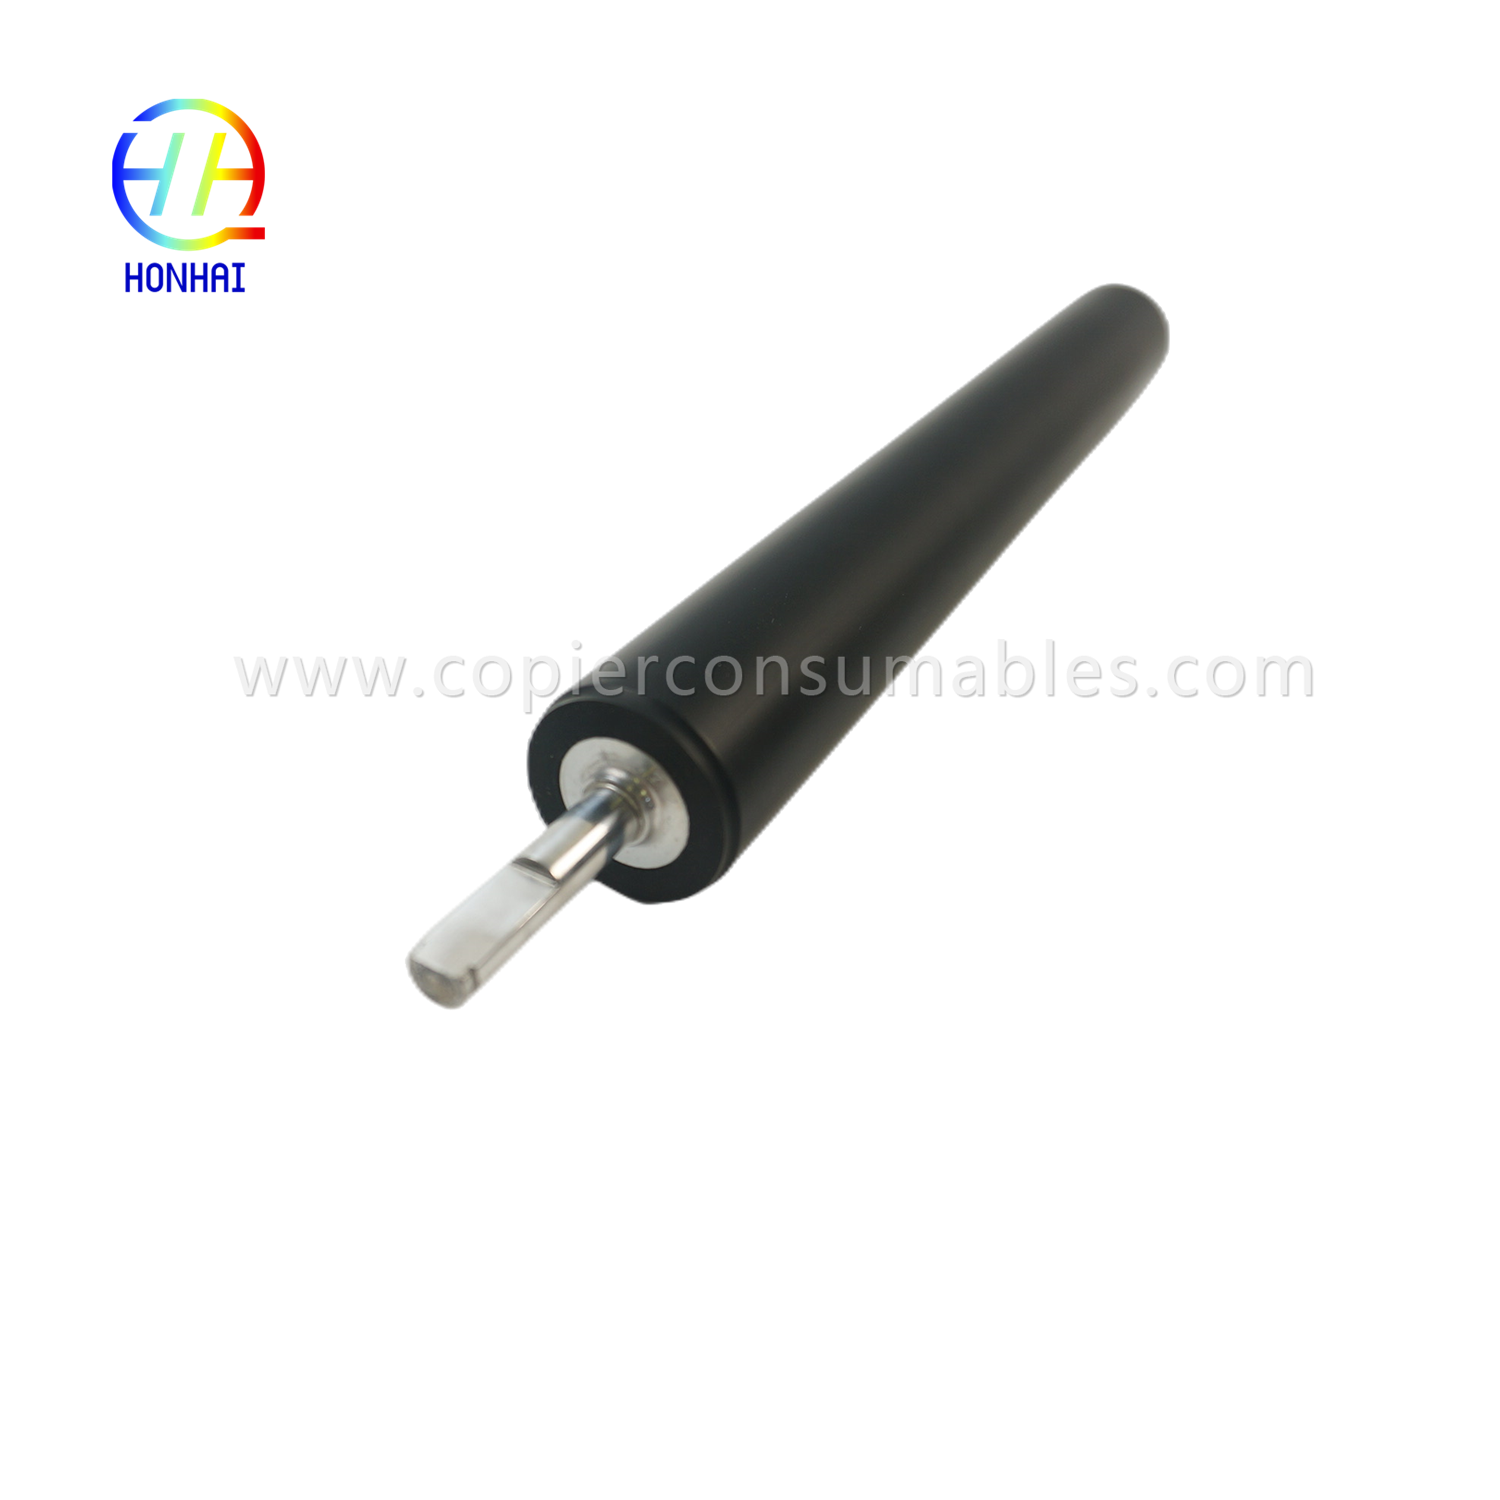 Lower Fuser Roller for HP4250 (4)